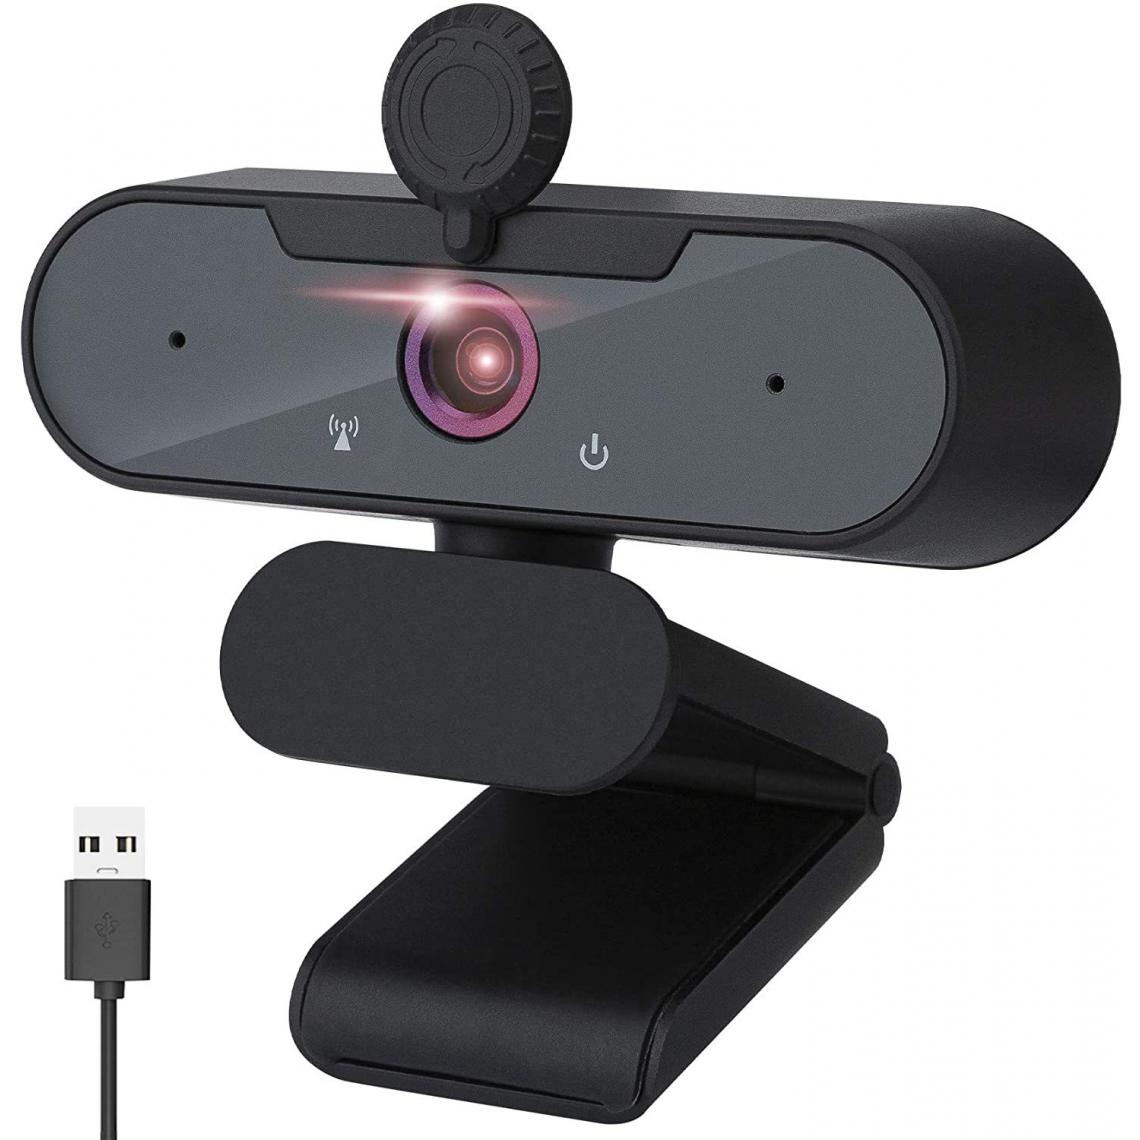 Chrono - Webcam 1080P avec Microphone, Webcam pour PC avec Cache Camera Ordinateur, Webcam Full HD Camera USB Web Camera pour Chat Vidéo, Vidéoconférence, Etudes, Enregistrement, Jeux, Cours en Ligne(Noir) - Autres accessoires smartphone